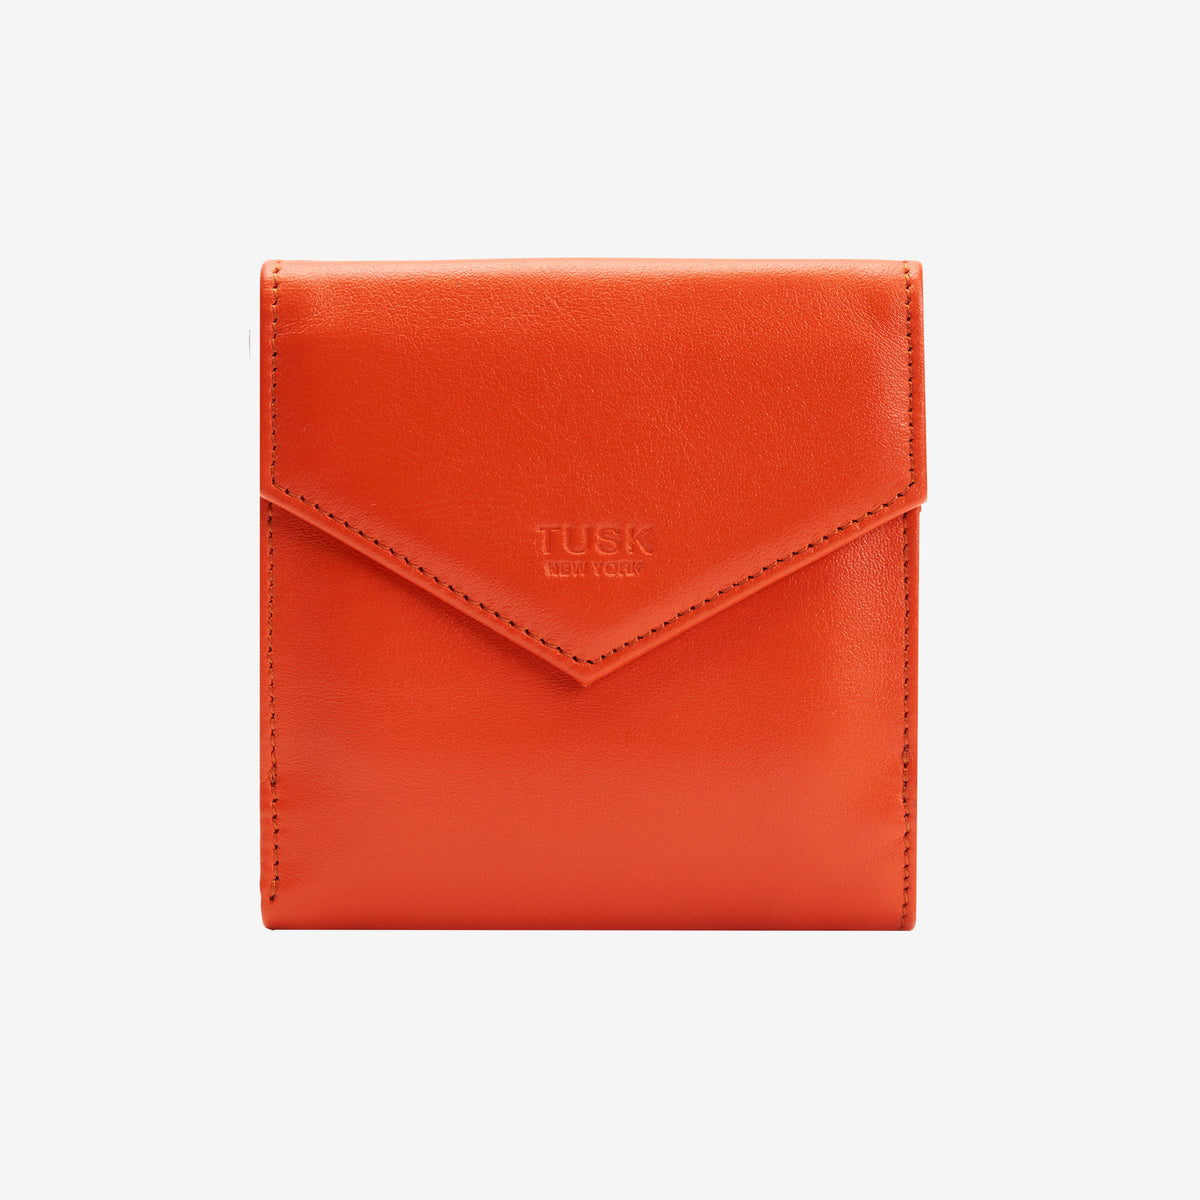 tusk-386-joy-smooth-leather-lshaped-indexer-orange-front